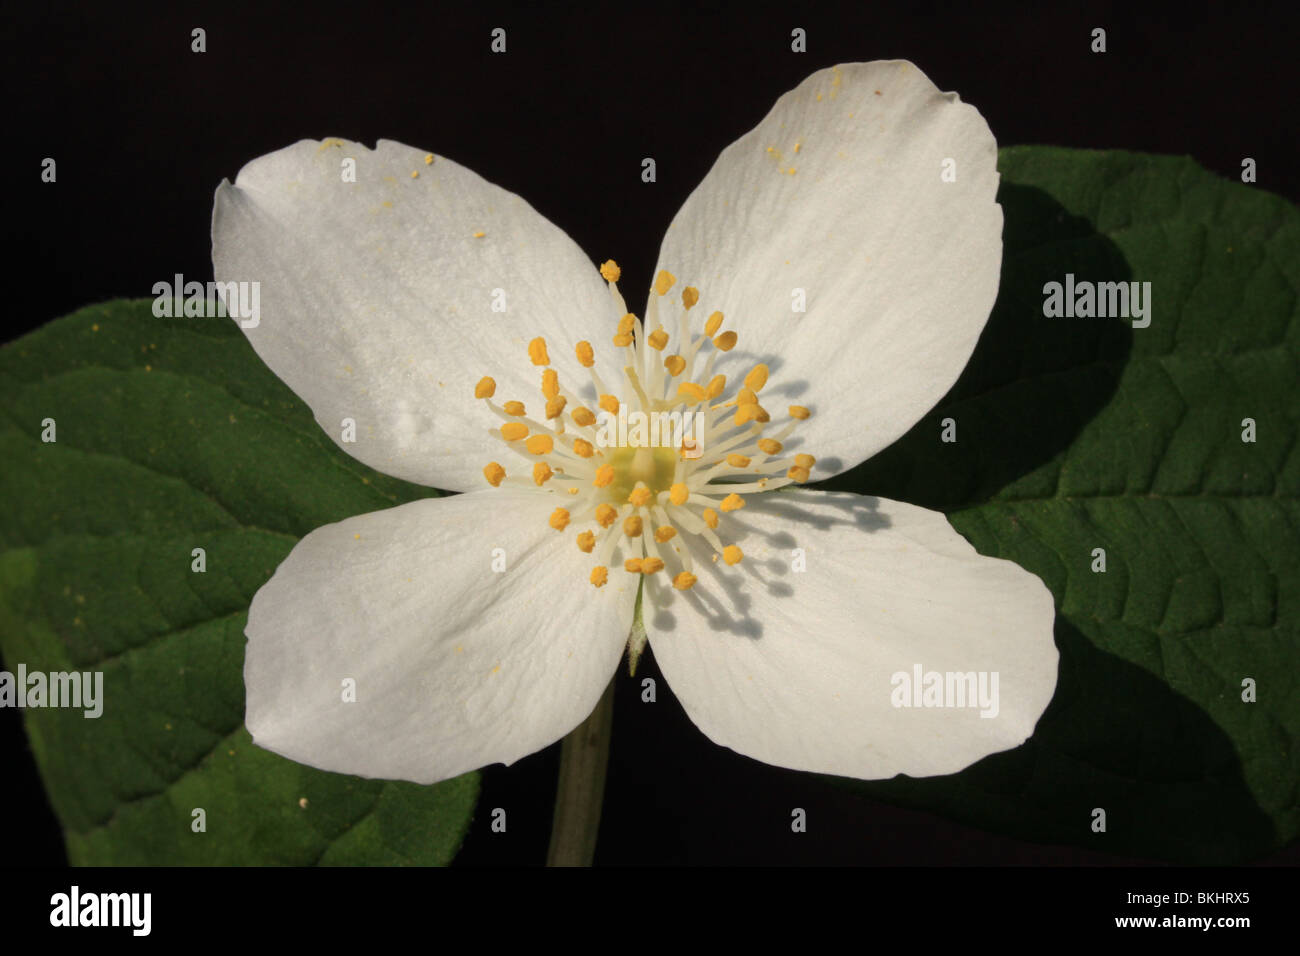 Dettaglio van een bloem Foto Stock